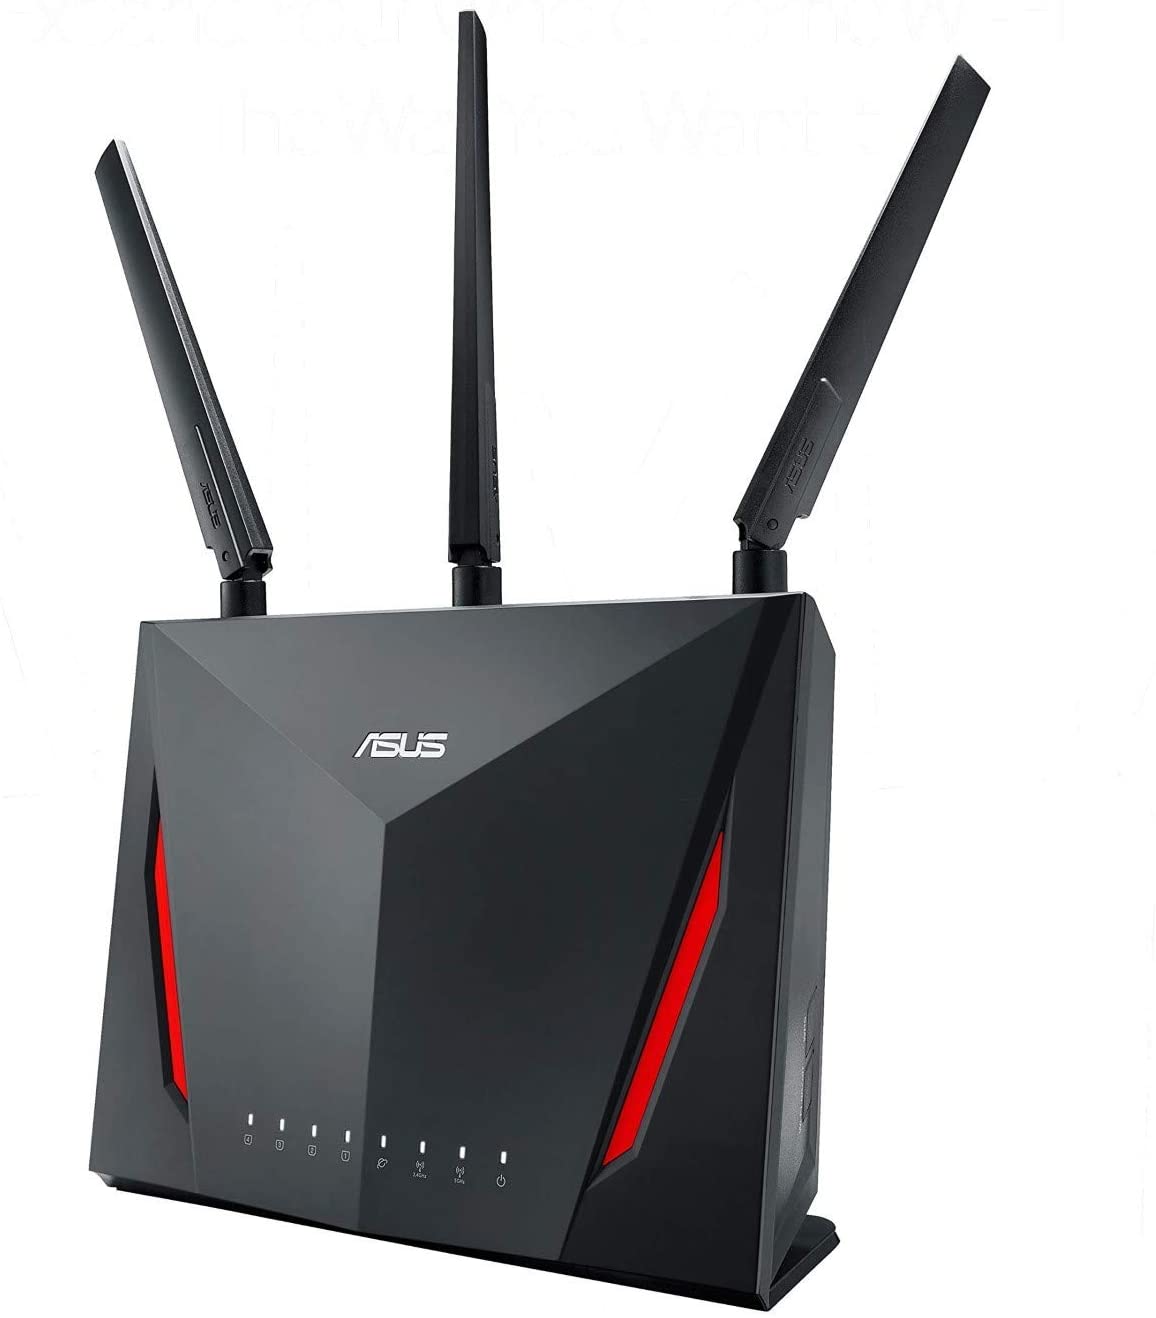 Asus RT AC86 routeur wifi gaming moyen de gamme